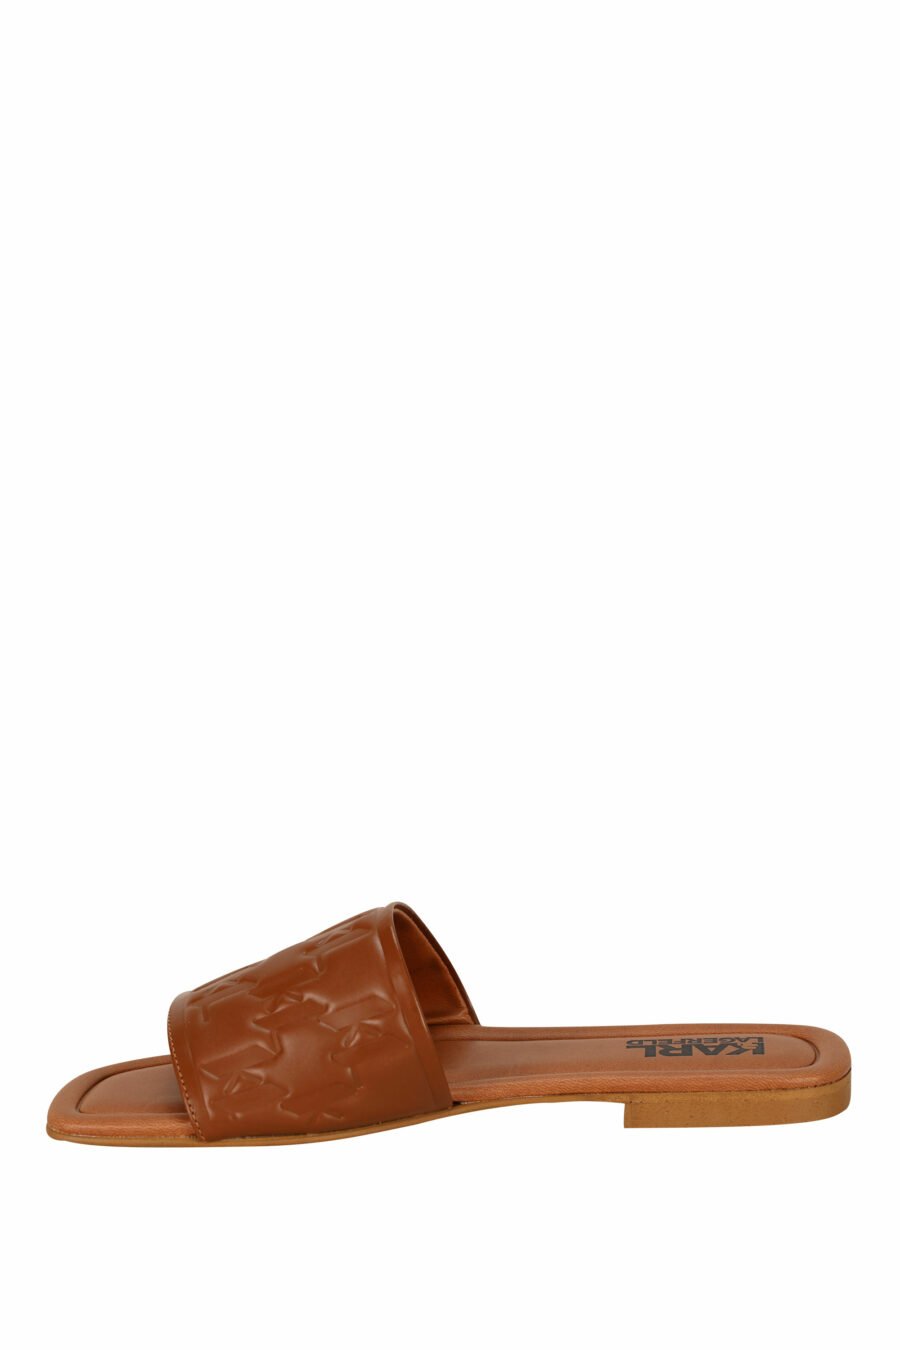 Sandalias marrón de cuero con logo monogram - 5059529404191 2